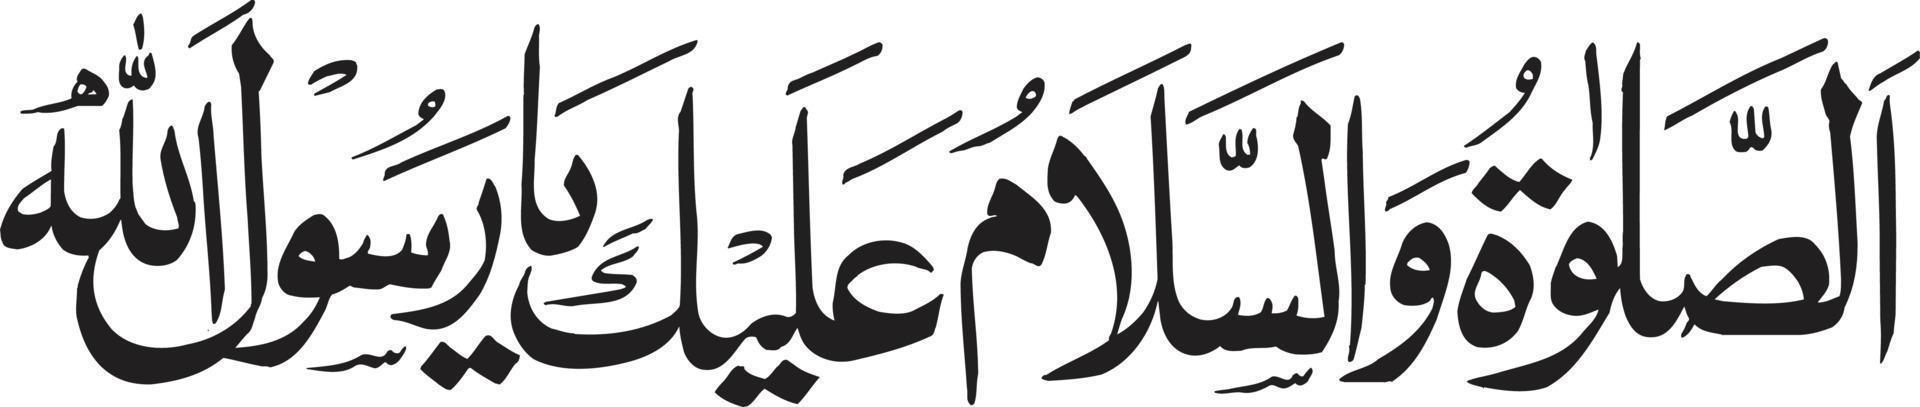 slaam vetor livre de caligrafia árabe islâmica